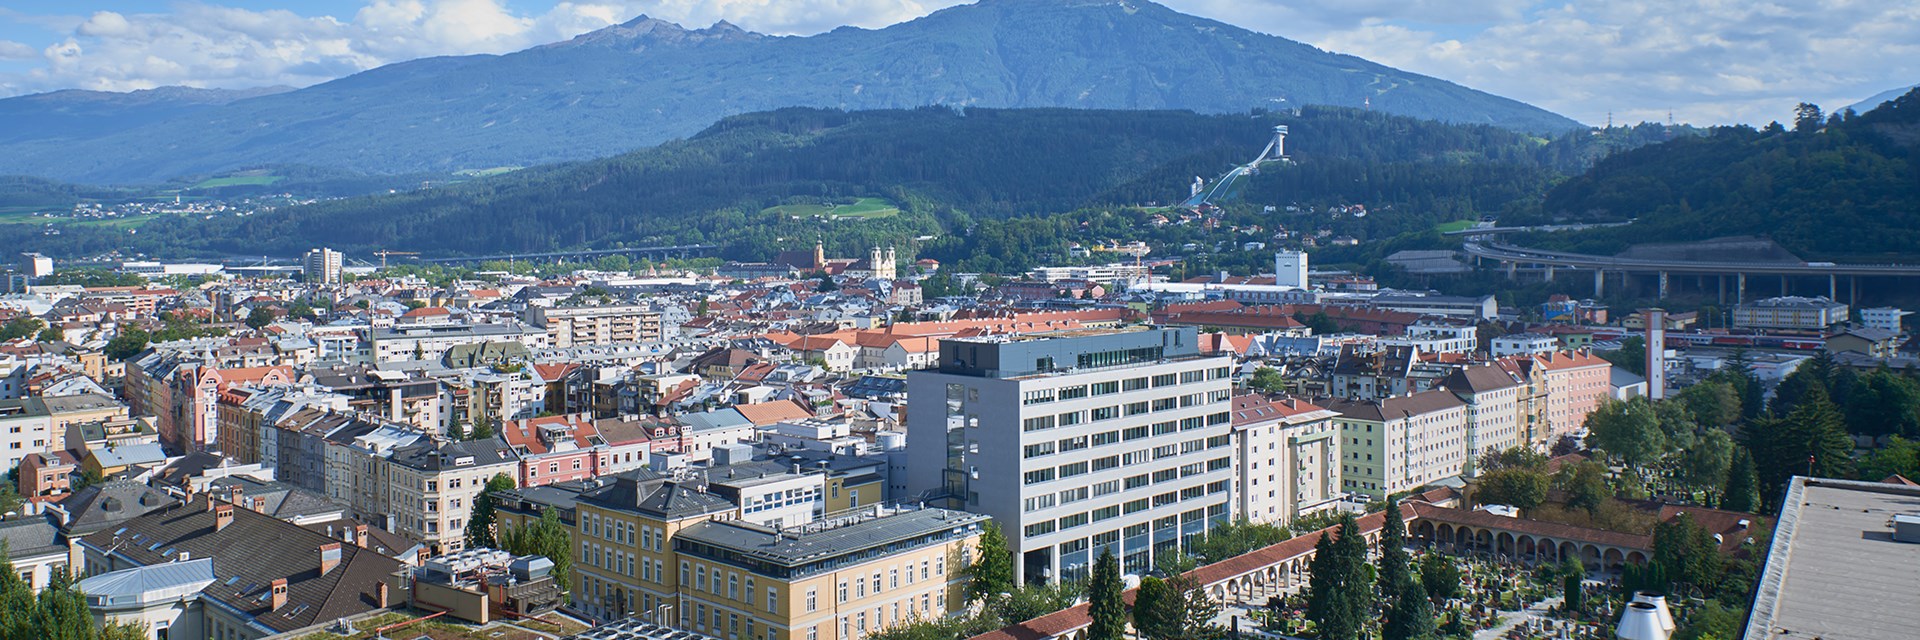 MEDUNI Innsbruck